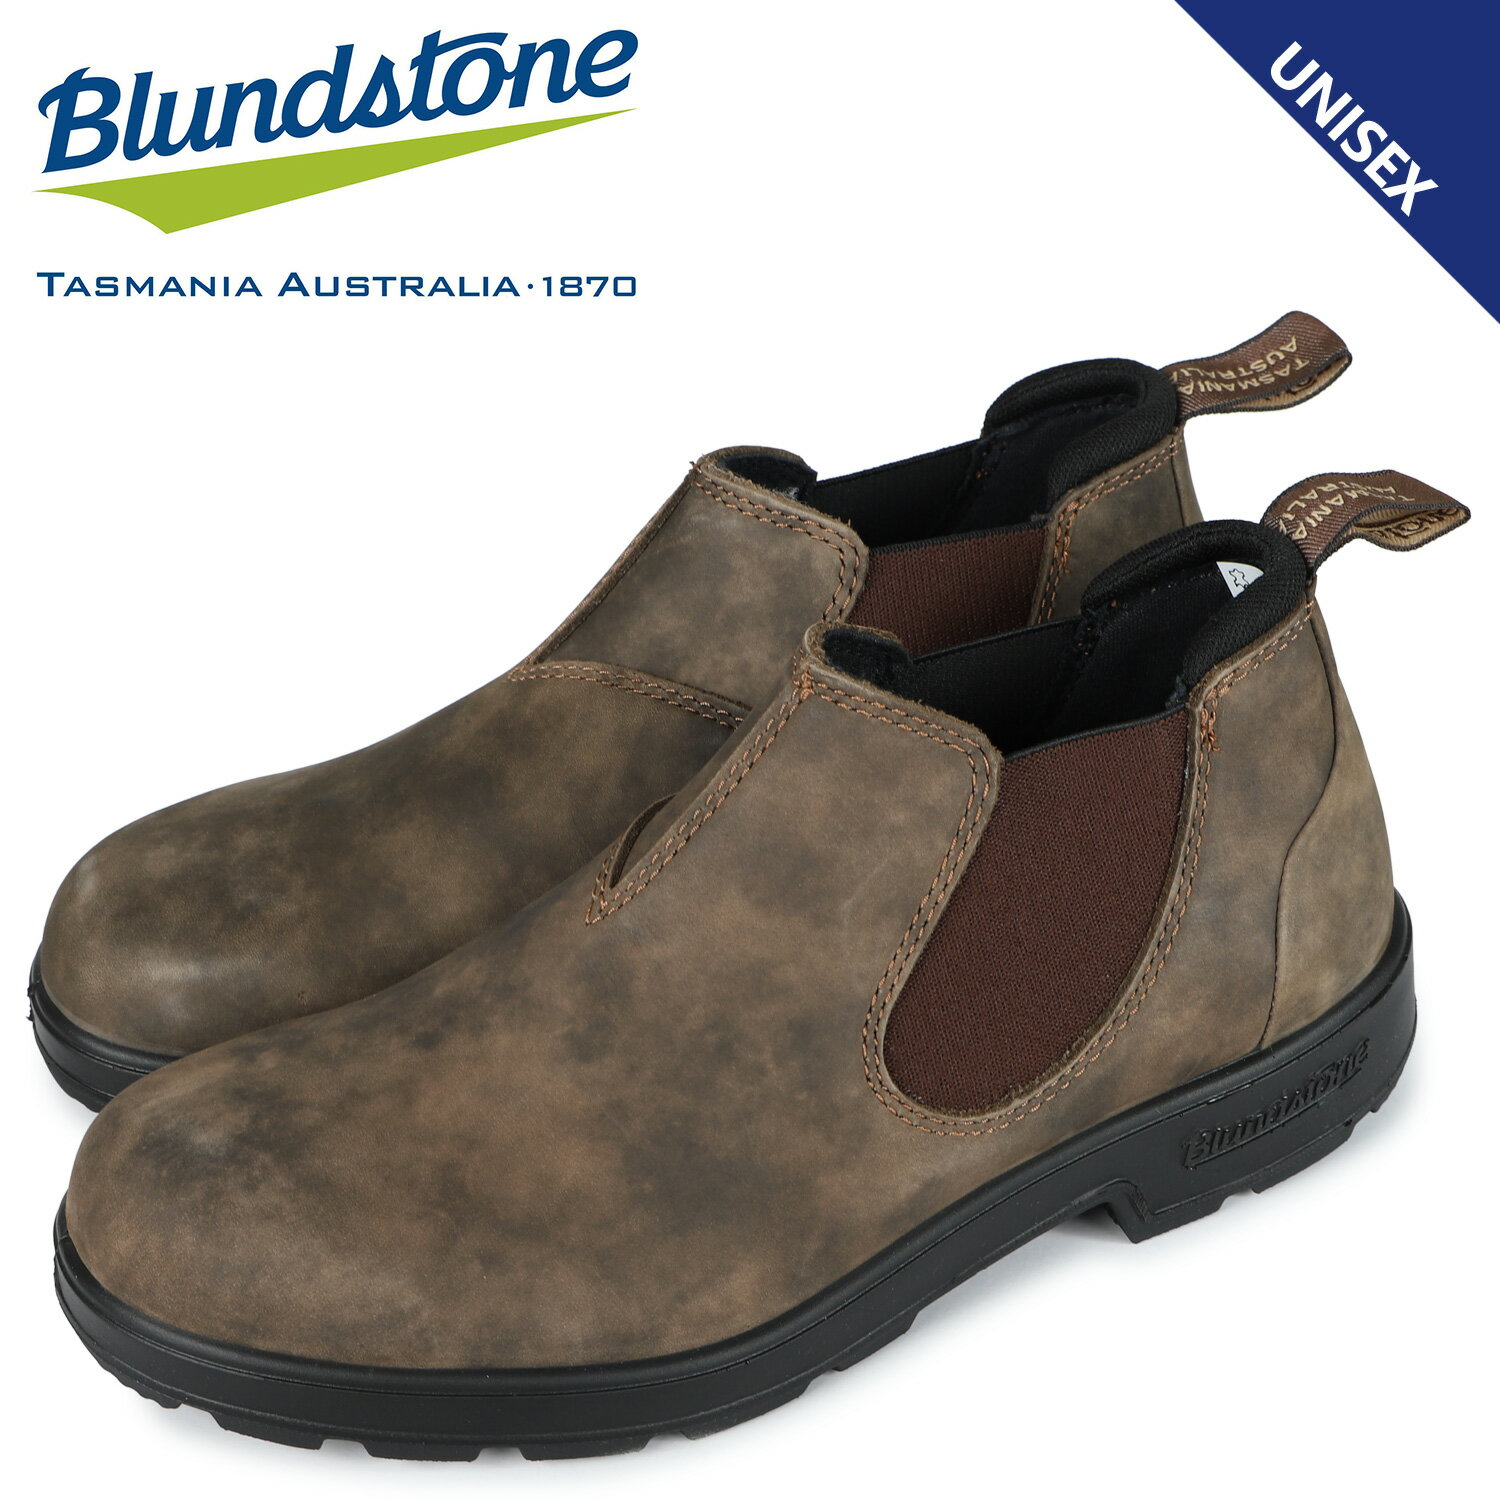 ブランドストーン Blundstone ブーツ サイドゴア メンズ レディース ローカット 2036 ブラウン BS2036267